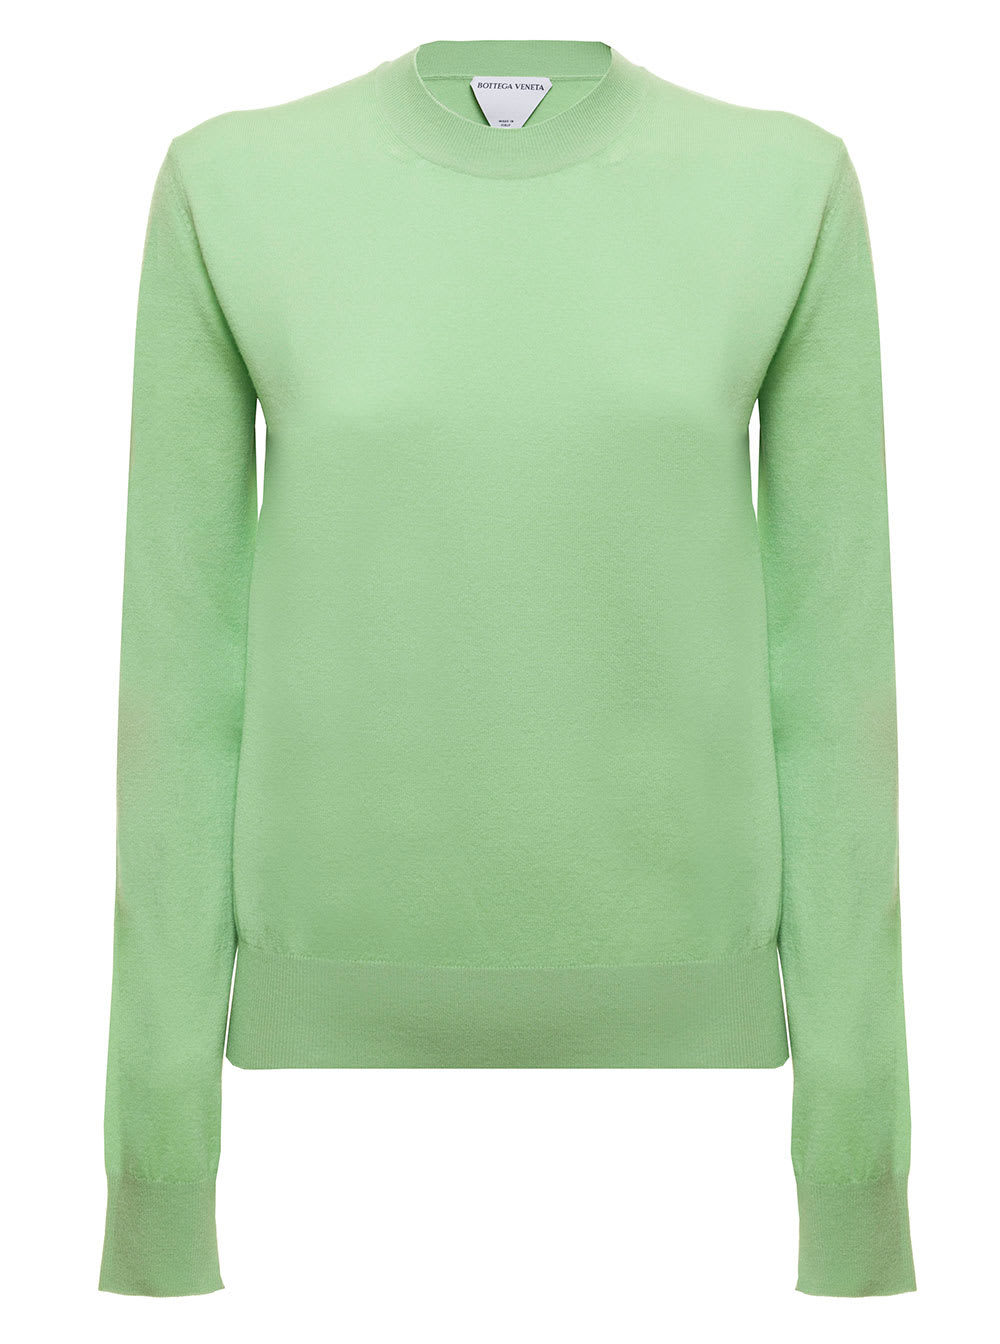 Bottega Veneta Womans Green Cashmere Crew Neck Sweater